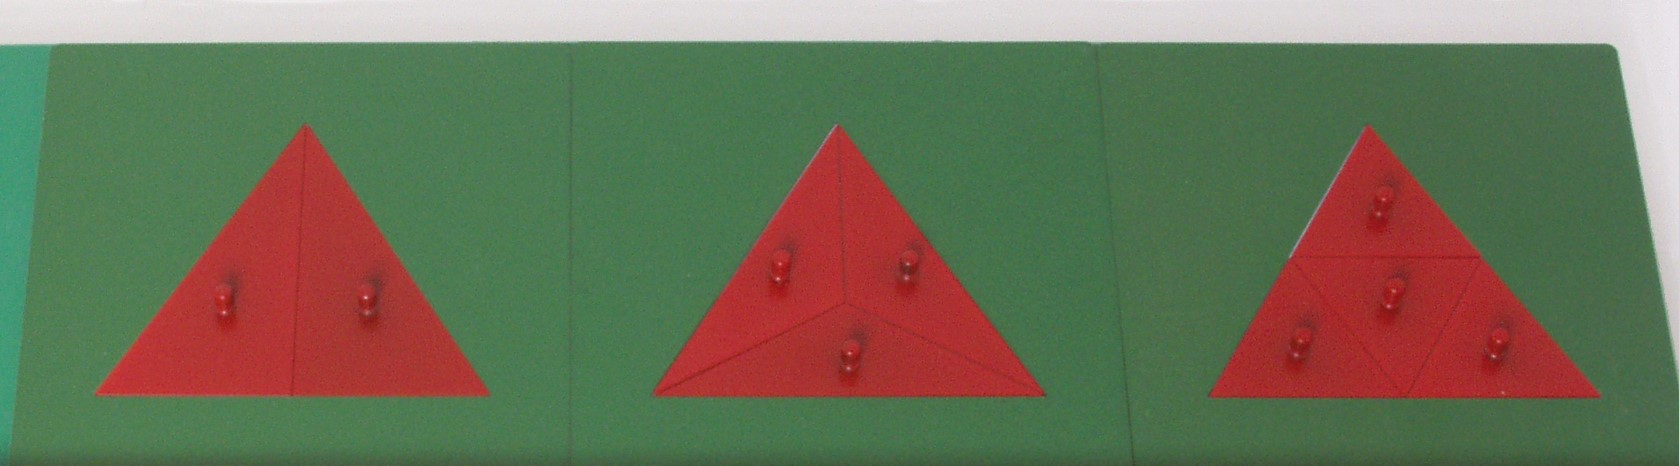 Incastri delle frazioni - triangoli